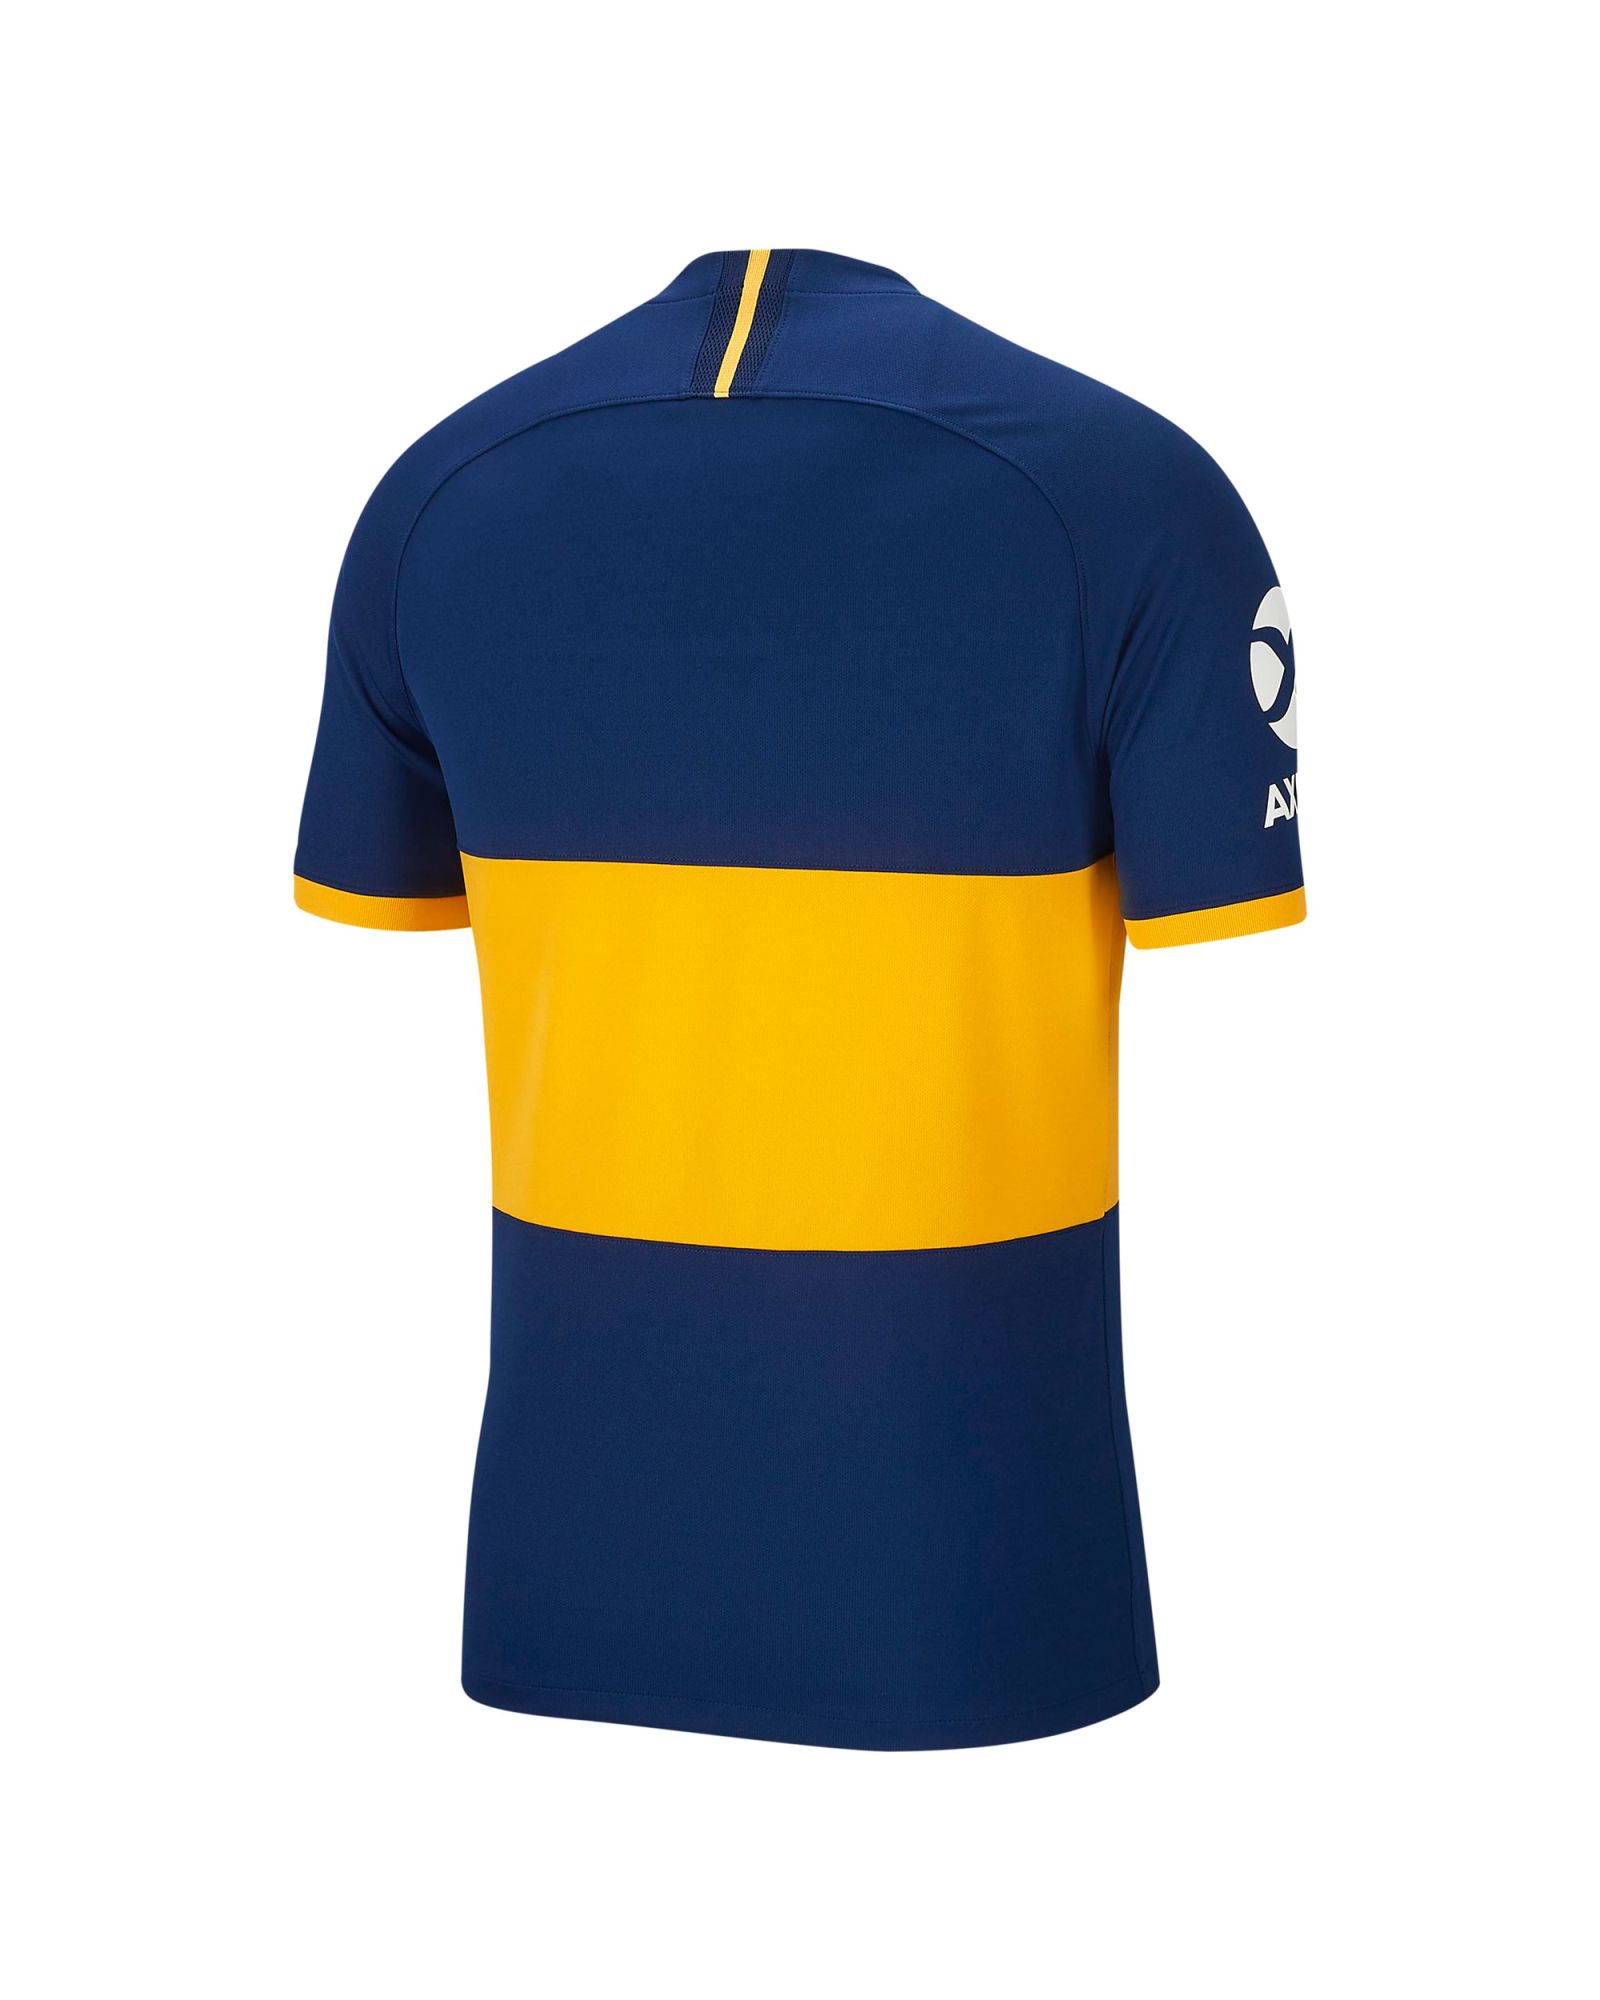 Camiseta 1ª Boca Juniors 2019/2020 - Fútbol Factory